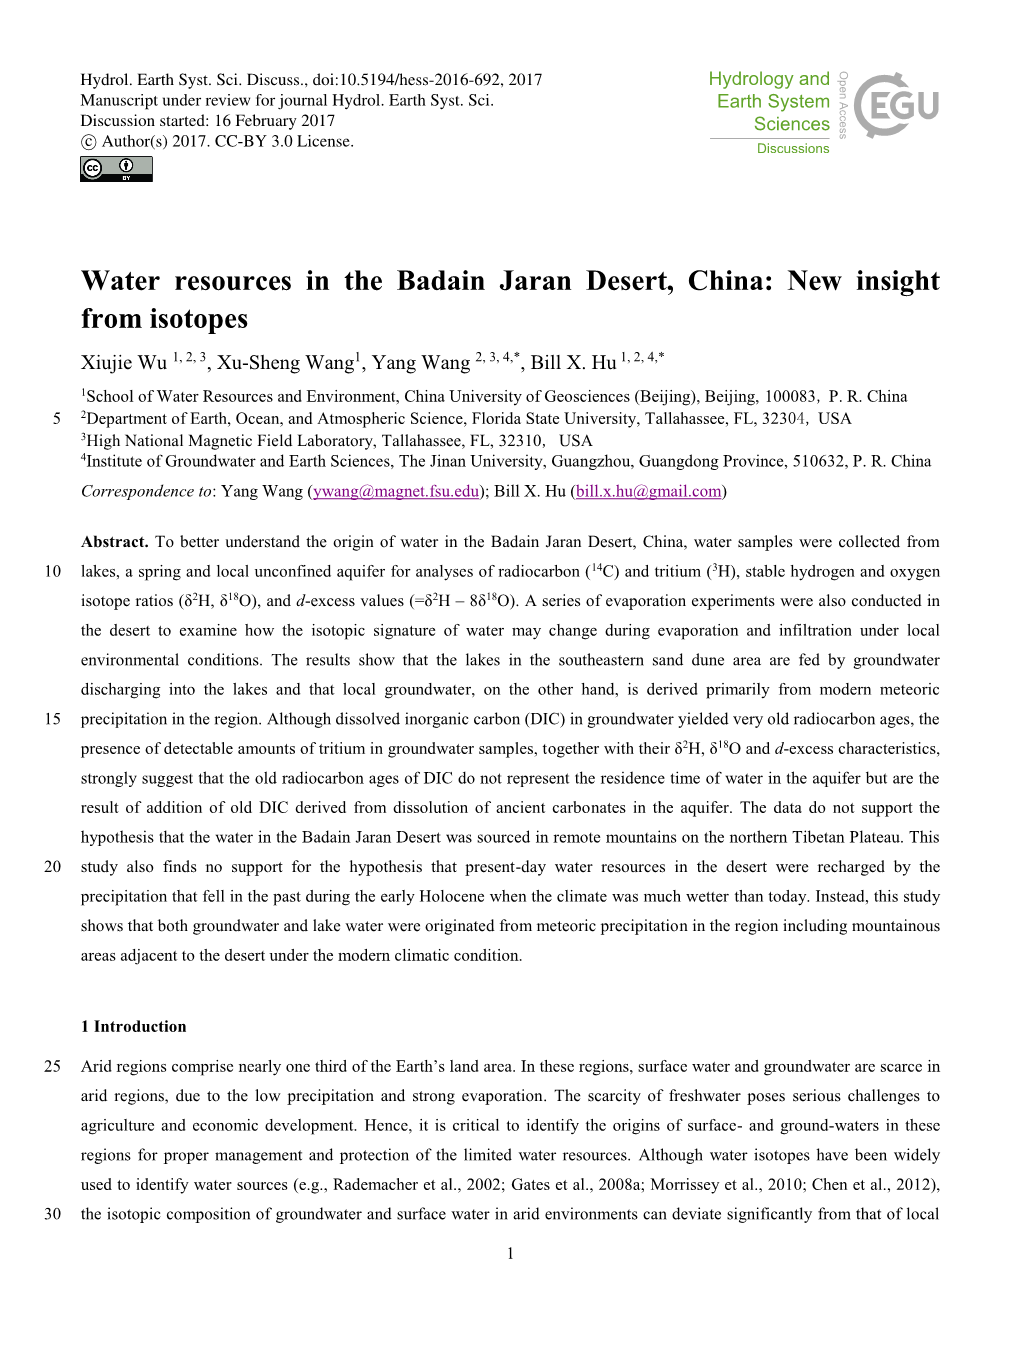 Water Resources in the Badain Jaran Desert, China: New Insight from Isotopes Xiujie Wu 1, 2, 3, Xu-Sheng Wang1, Yang Wang 2, 3, 4,*, Bill X